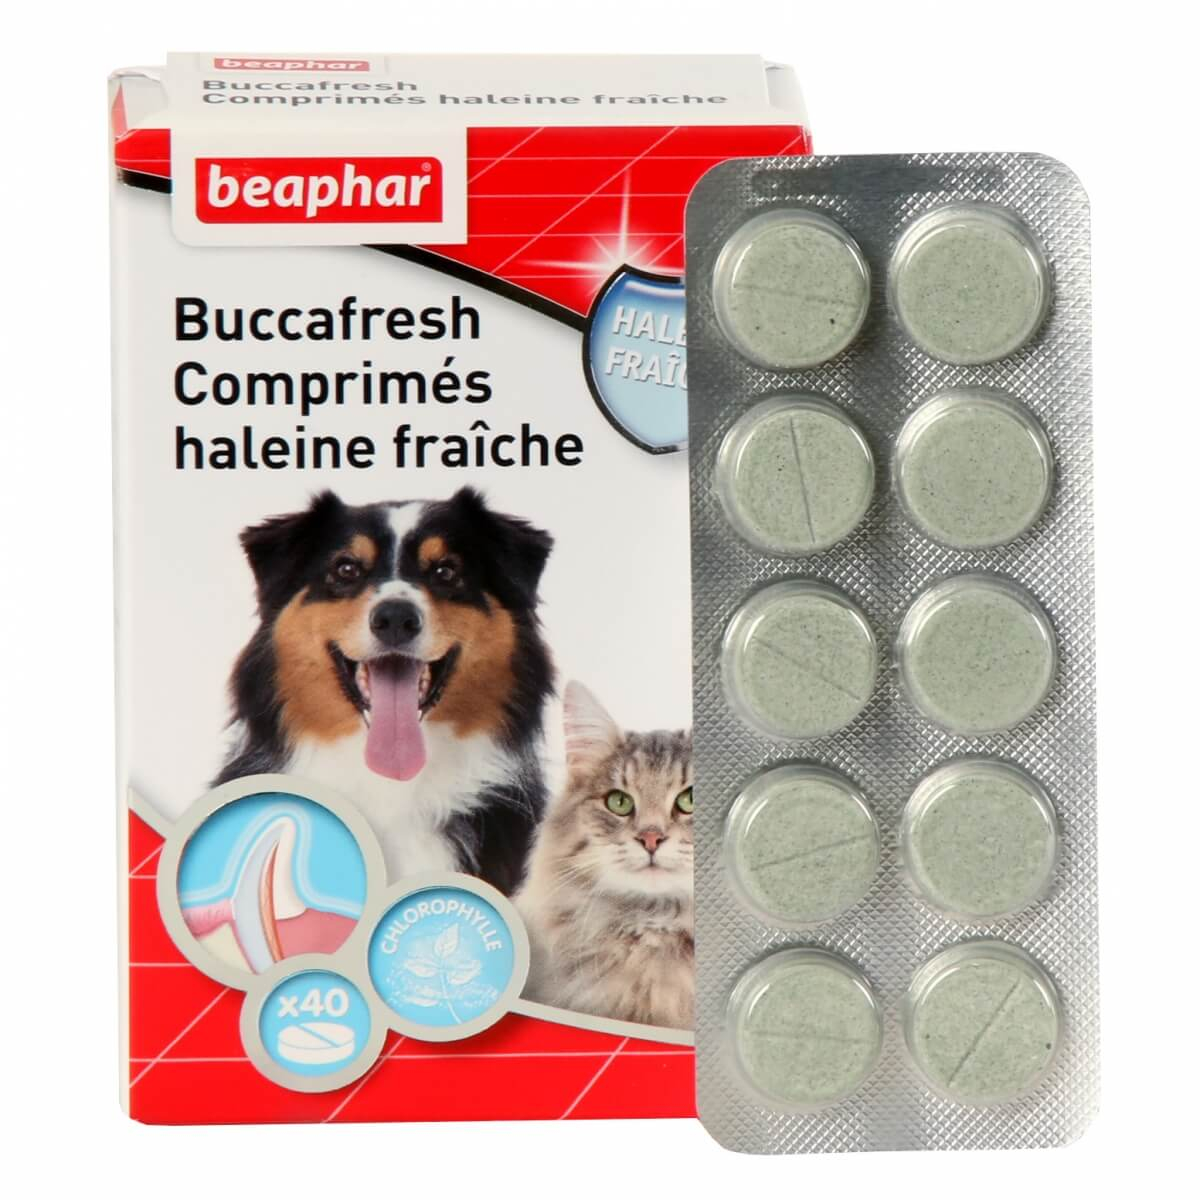 Saco crecer espacio Buccafresh, pastillas para el mal aliento para perros y gatos